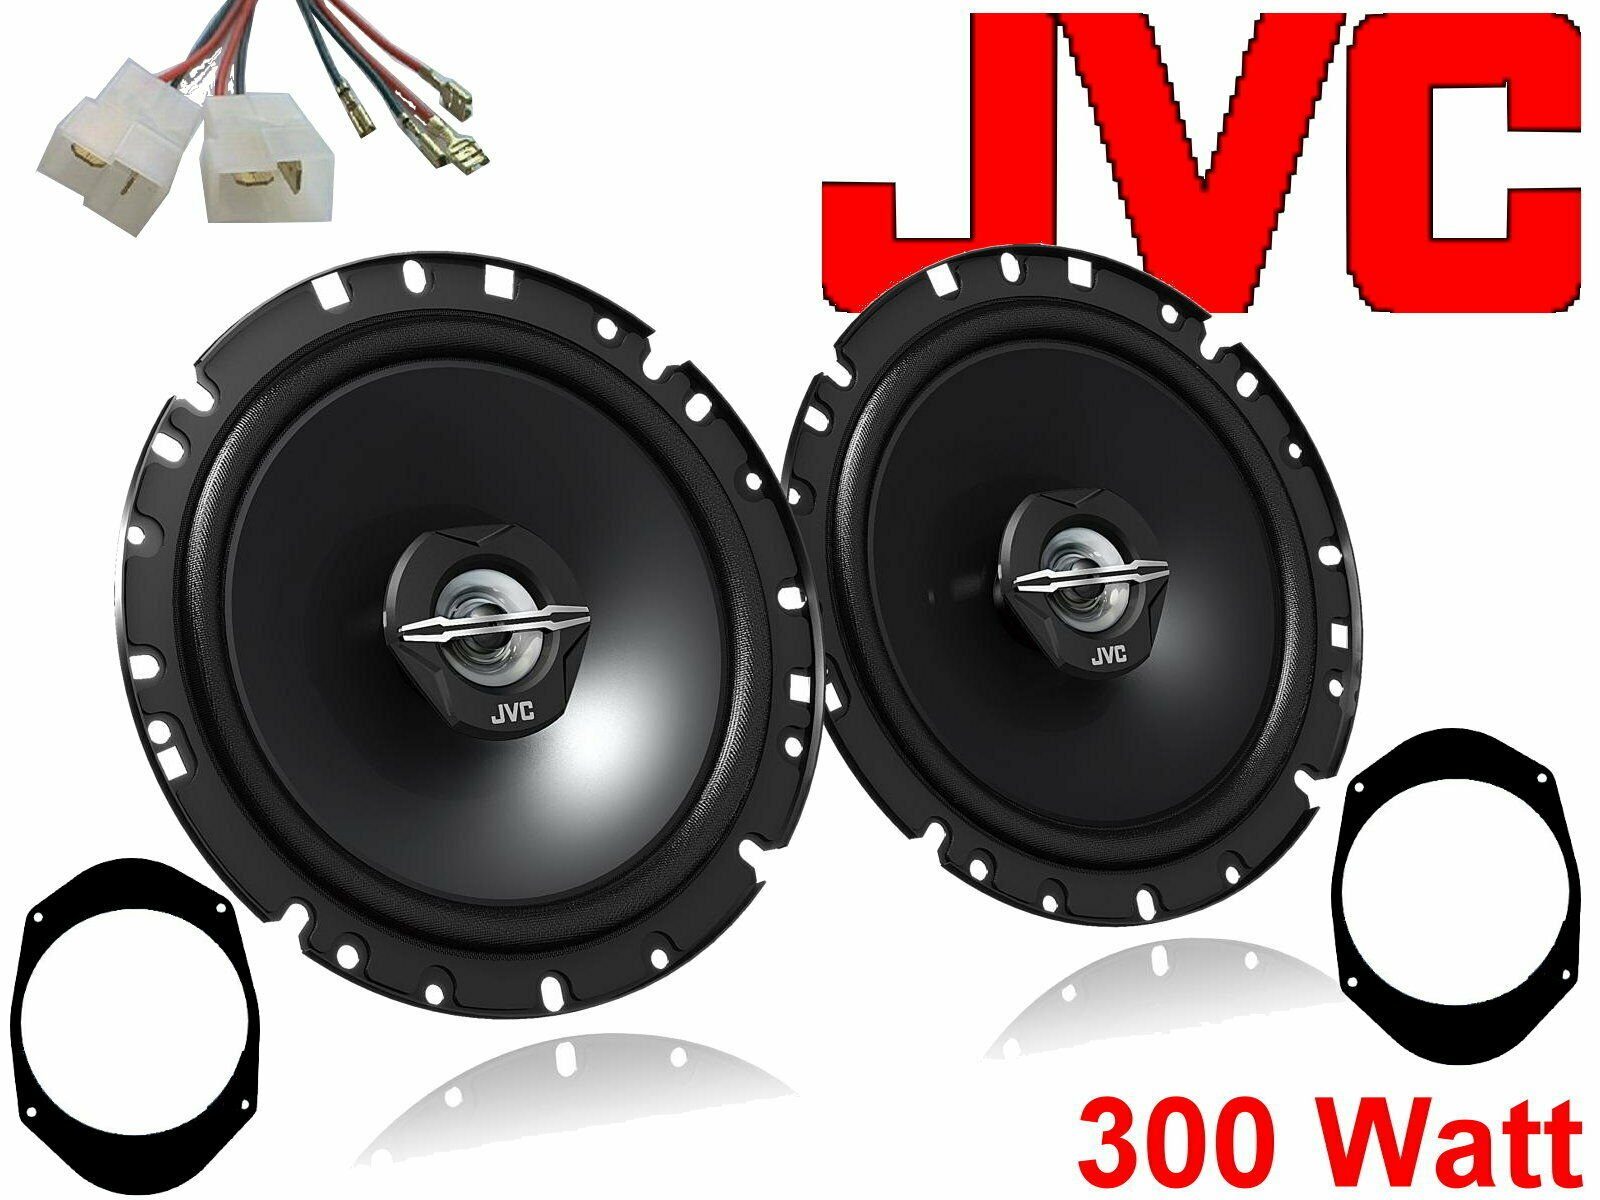 DSX JVC 300 W passend für Ford Fiesta 01 - 08 Lautspre Auto-Lautsprecher (30 W) | Auto-Lautsprecher